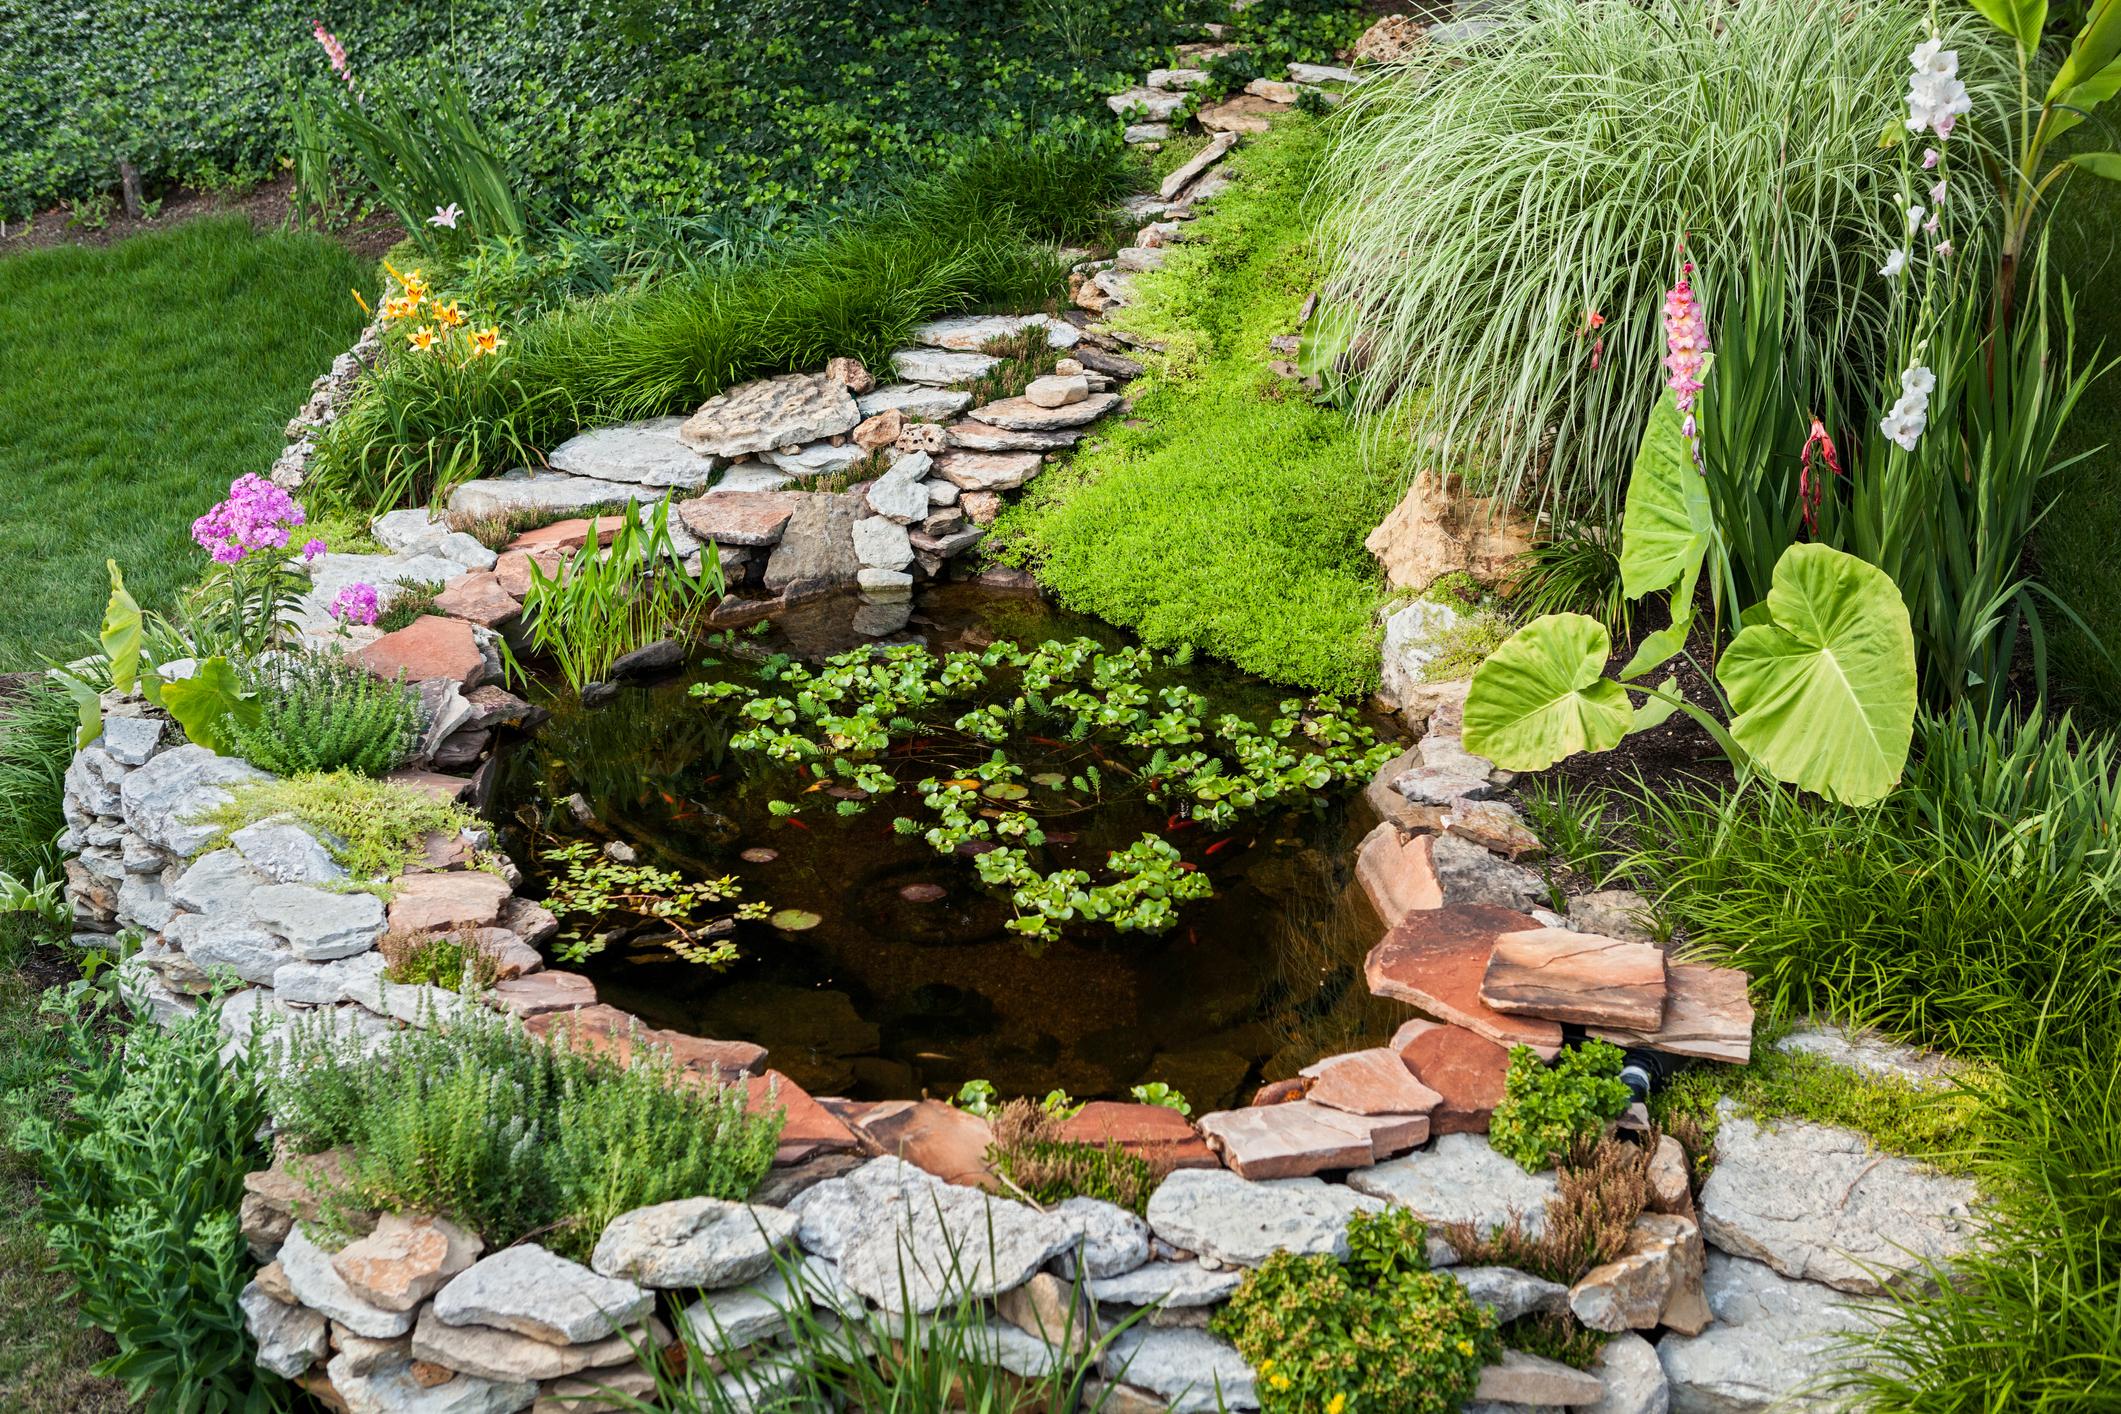 Ein Biotop oder ein Teich im Garten sollten mindestens zehn Quadratmeter gross sein